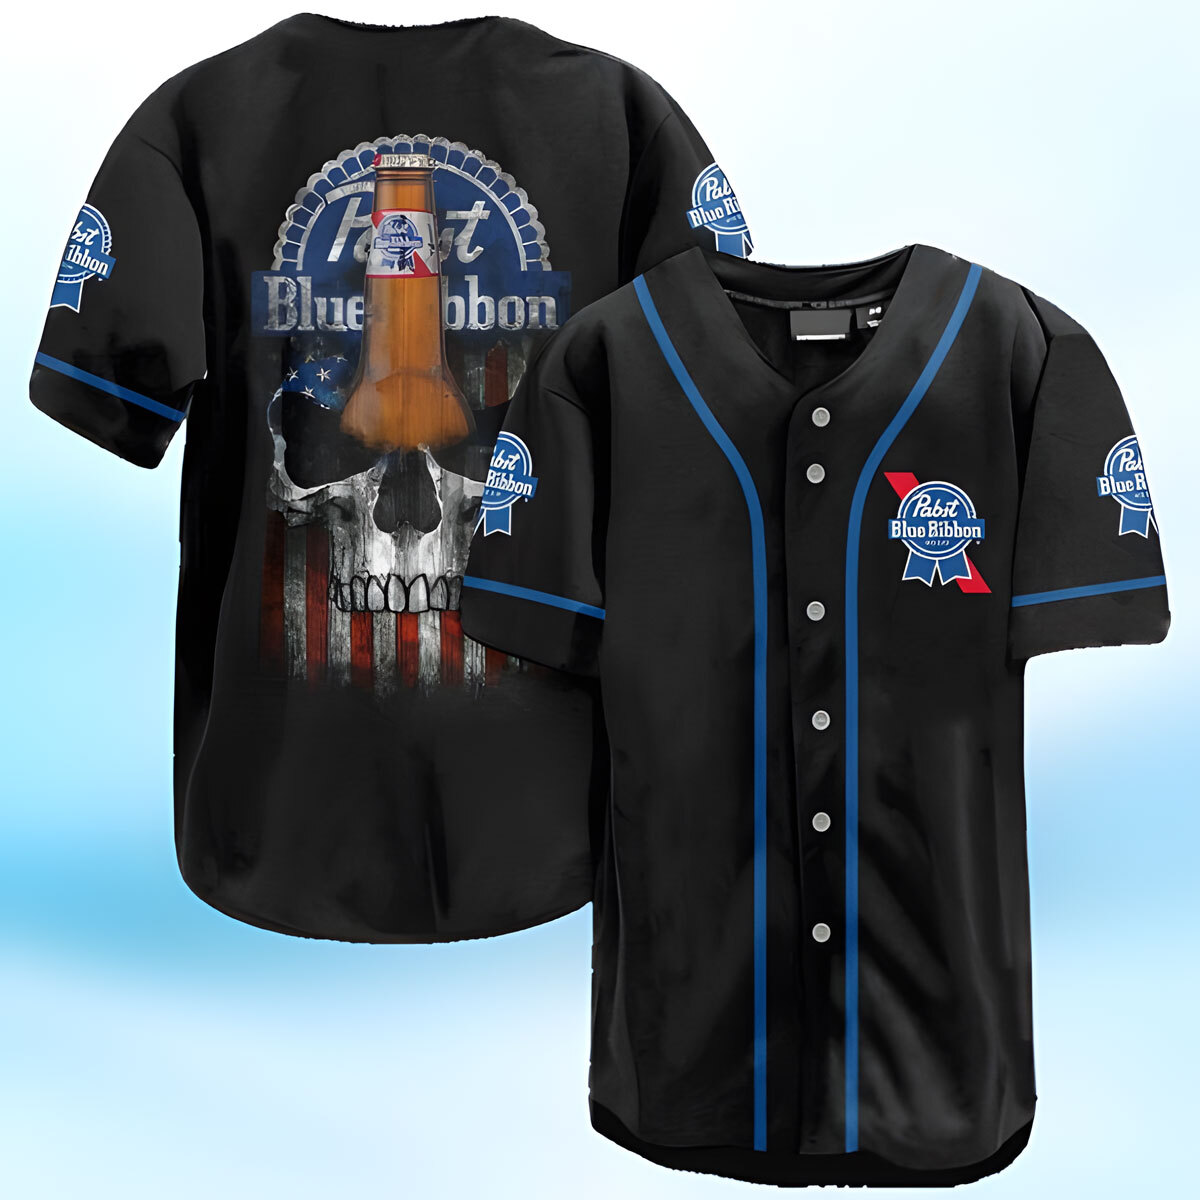 Pabst Blue Ribbon Baseball Jersey US Flag Black Skull Gift For Sport Lovers